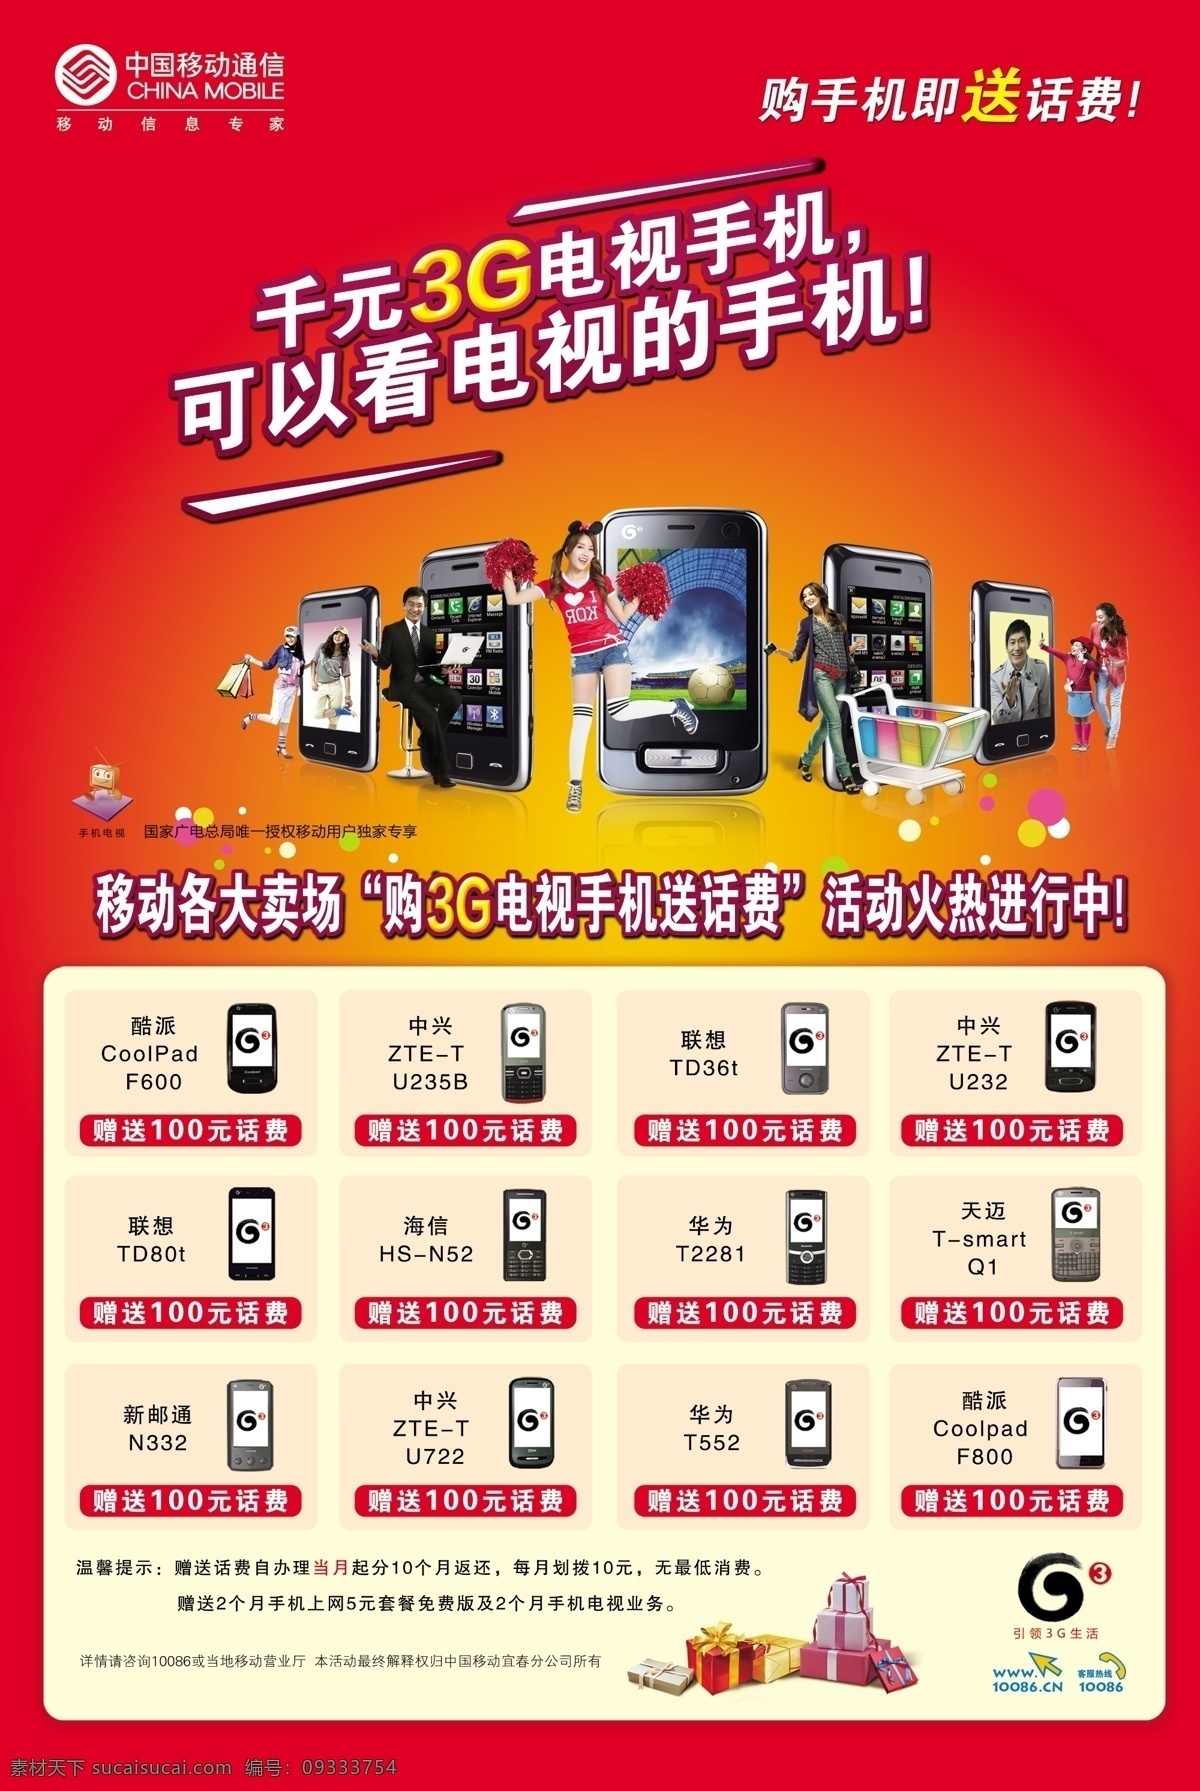 中国移动通信 3g手机 购机送礼 3g电视手机 各款手机 海报 广告设计模板 源文件